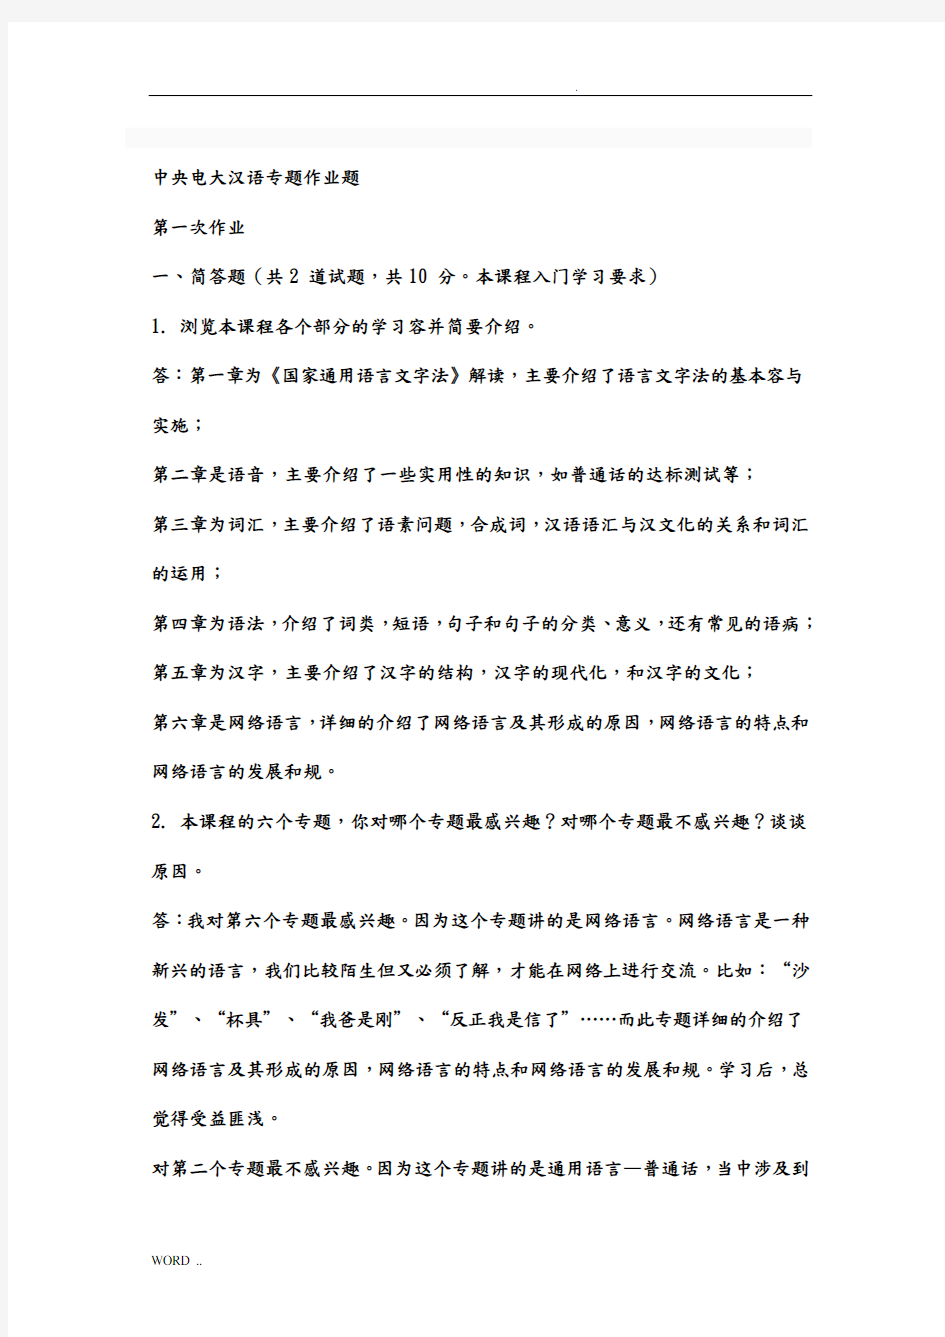 现代汉语专题网络作业答案(1-4任务)